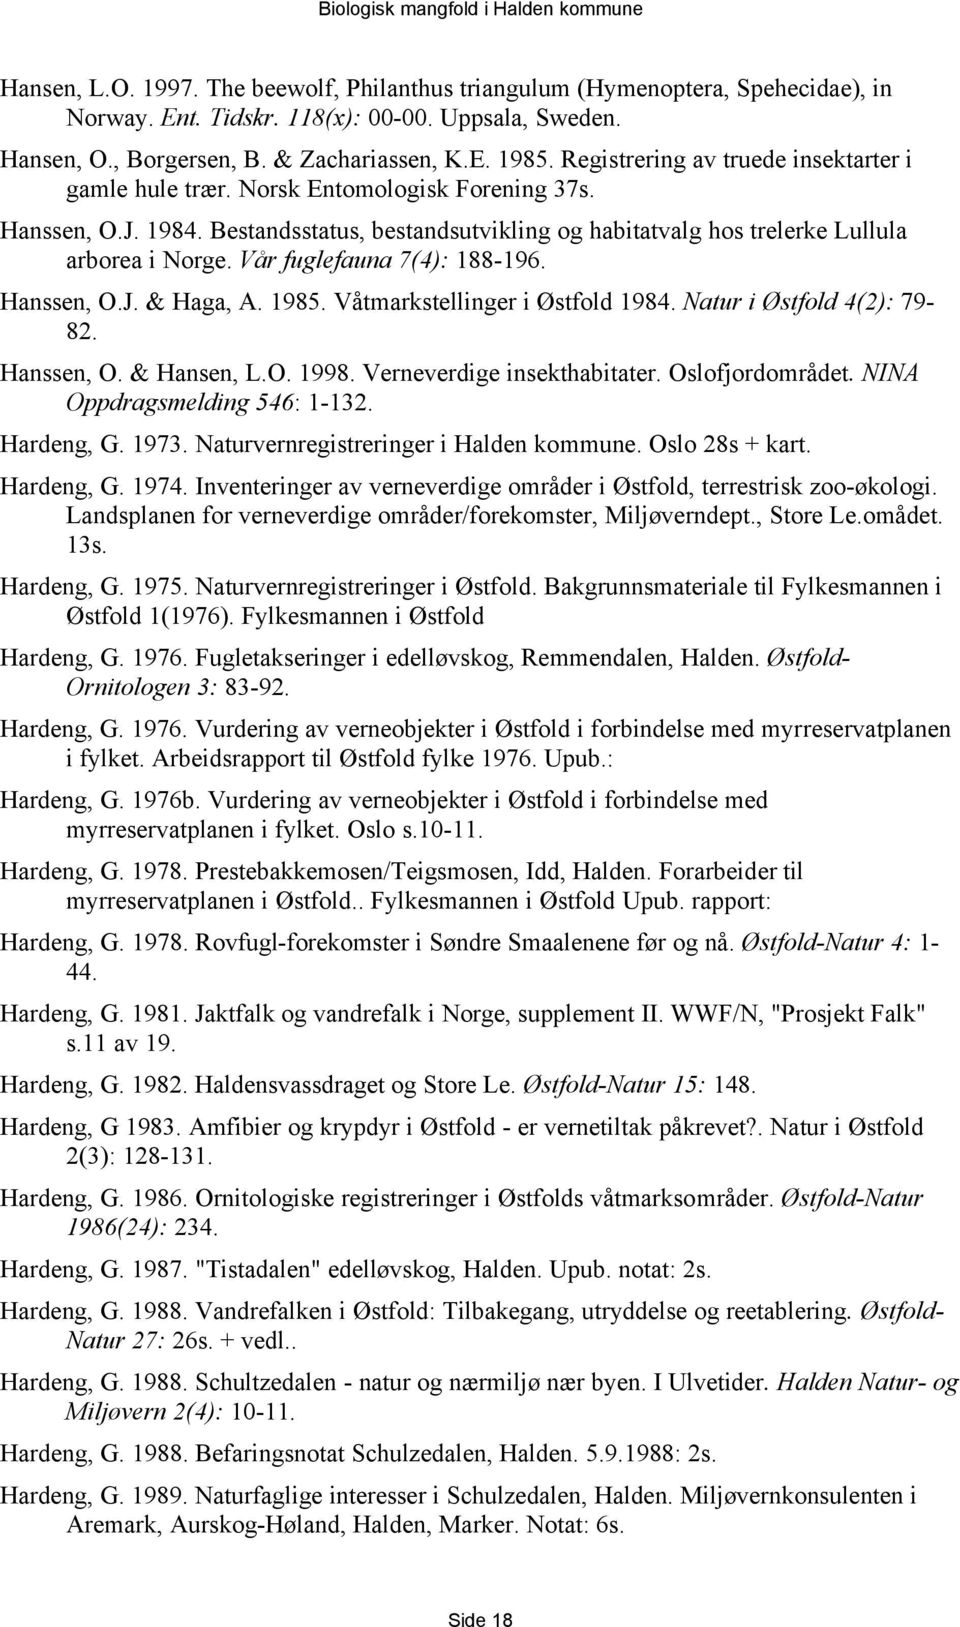 Vår fuglefauna 7(4): 188-196. Hanssen, O.J. & Haga, A. 1985. Våtmarkstellinger i Østfold 1984. Natur i Østfold 4(2): 79-82. Hanssen, O. & Hansen, L.O. 1998. Verneverdige insekthabitater.